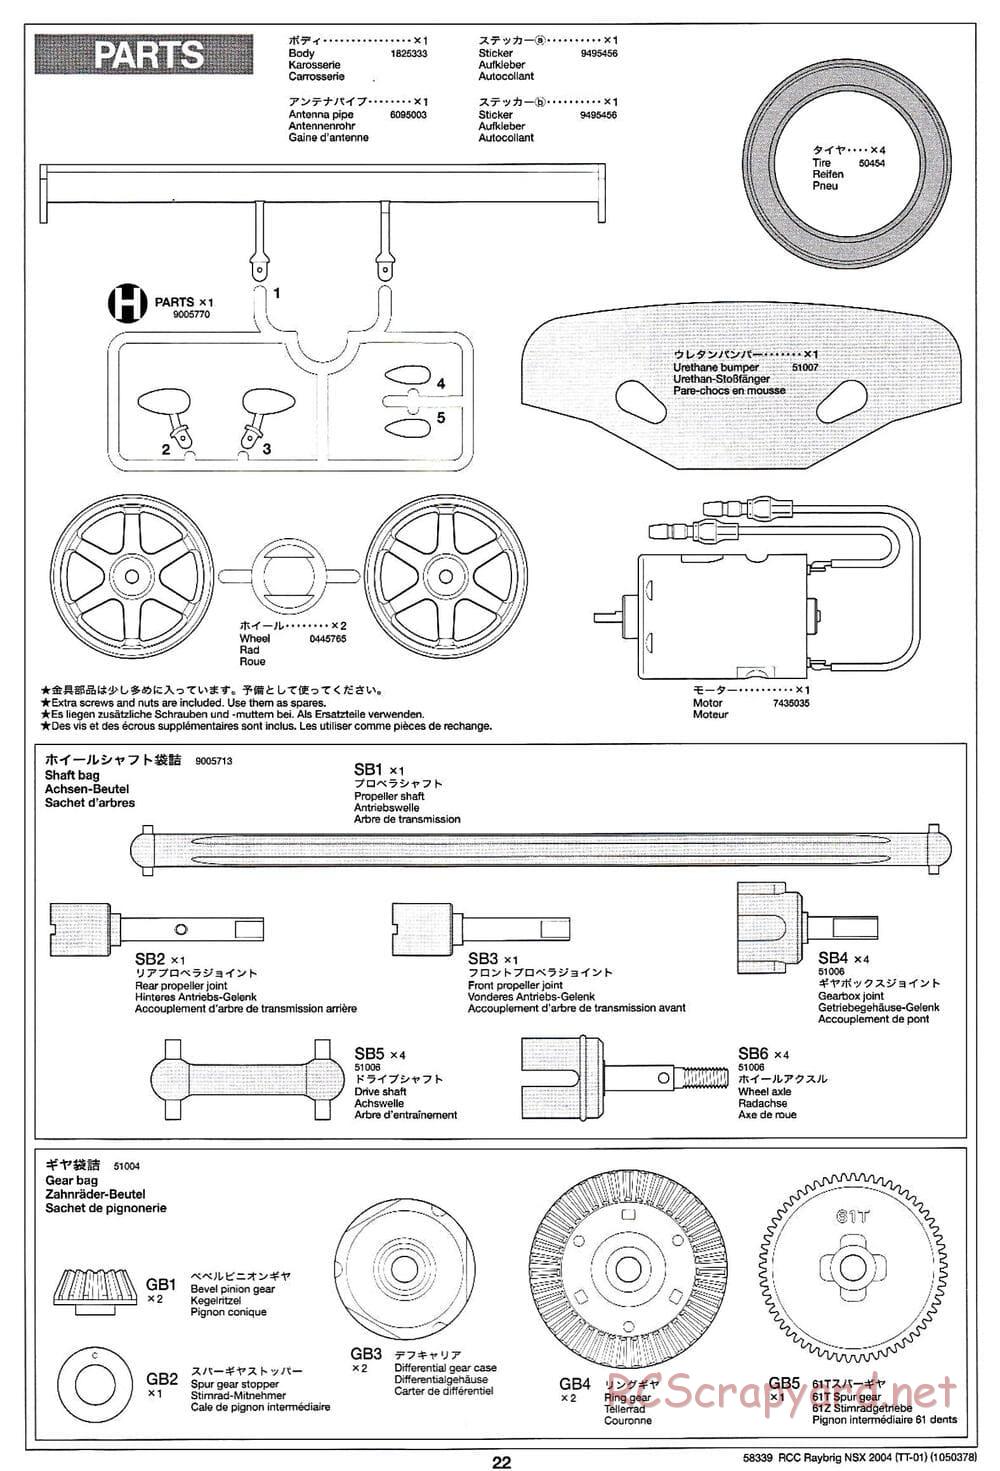 Tamiya - Raybrig NSX 2004 Chassis - Manual - Page 22